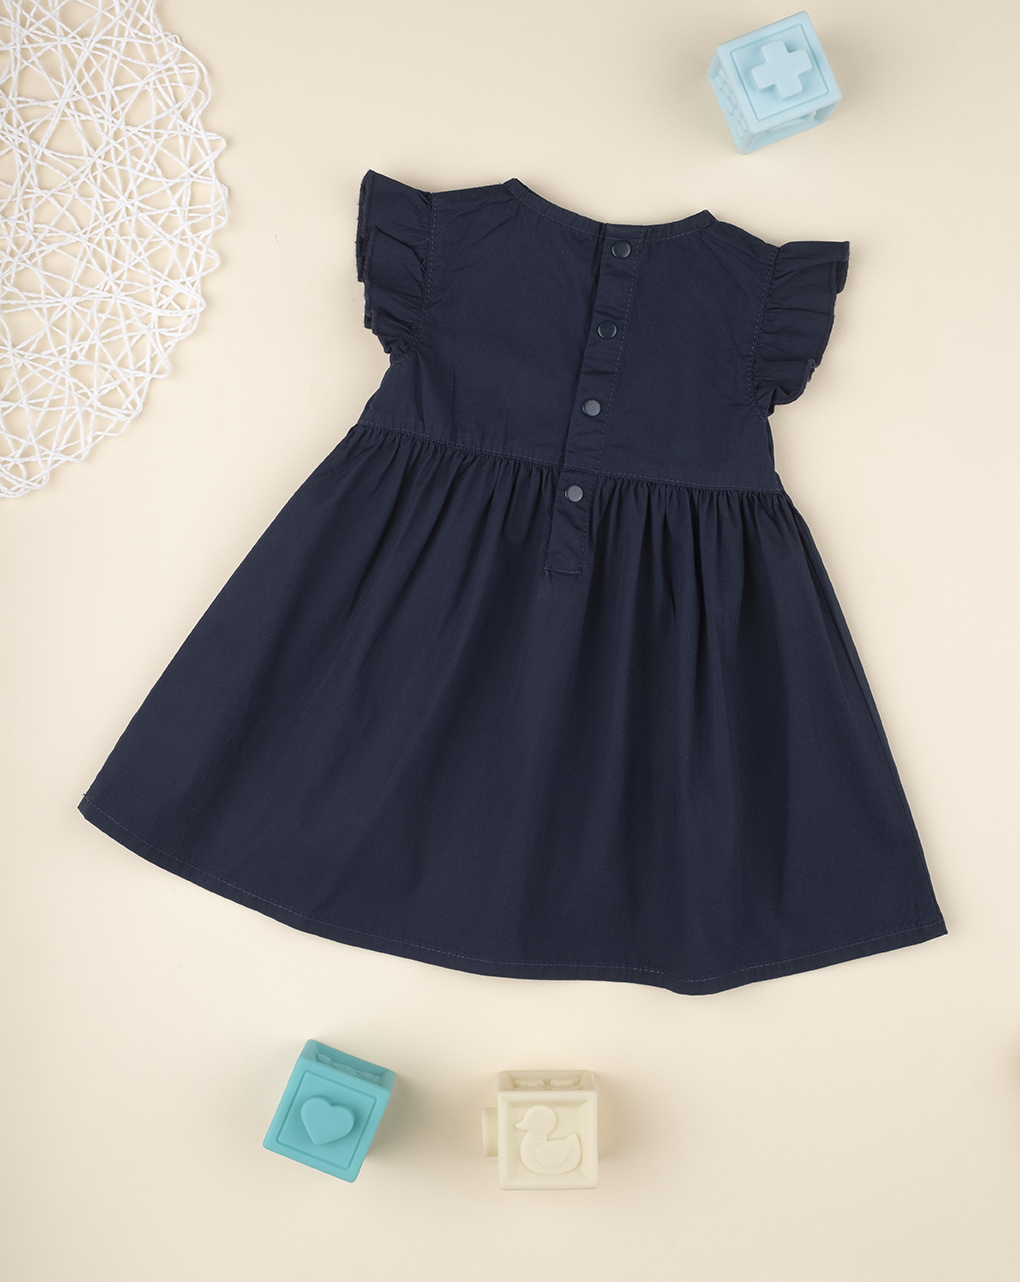 βρεφικό φόρεμα μπλε με καρδούλα για κορίτσι - Prénatal